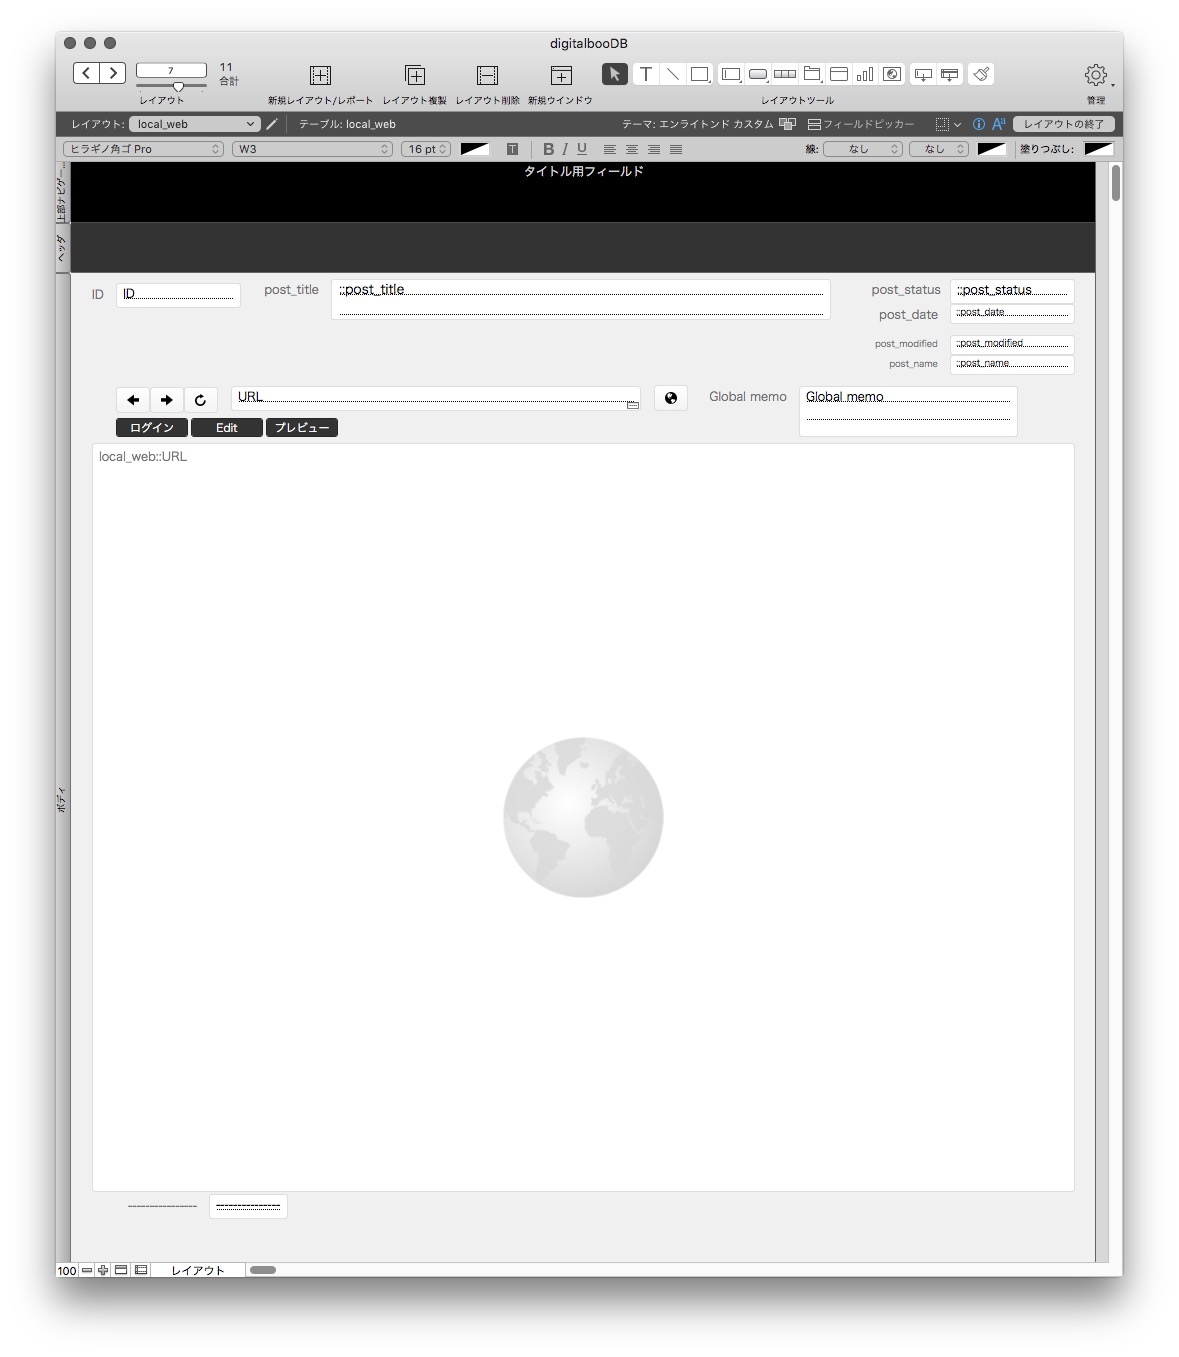 digitalboo web viewer